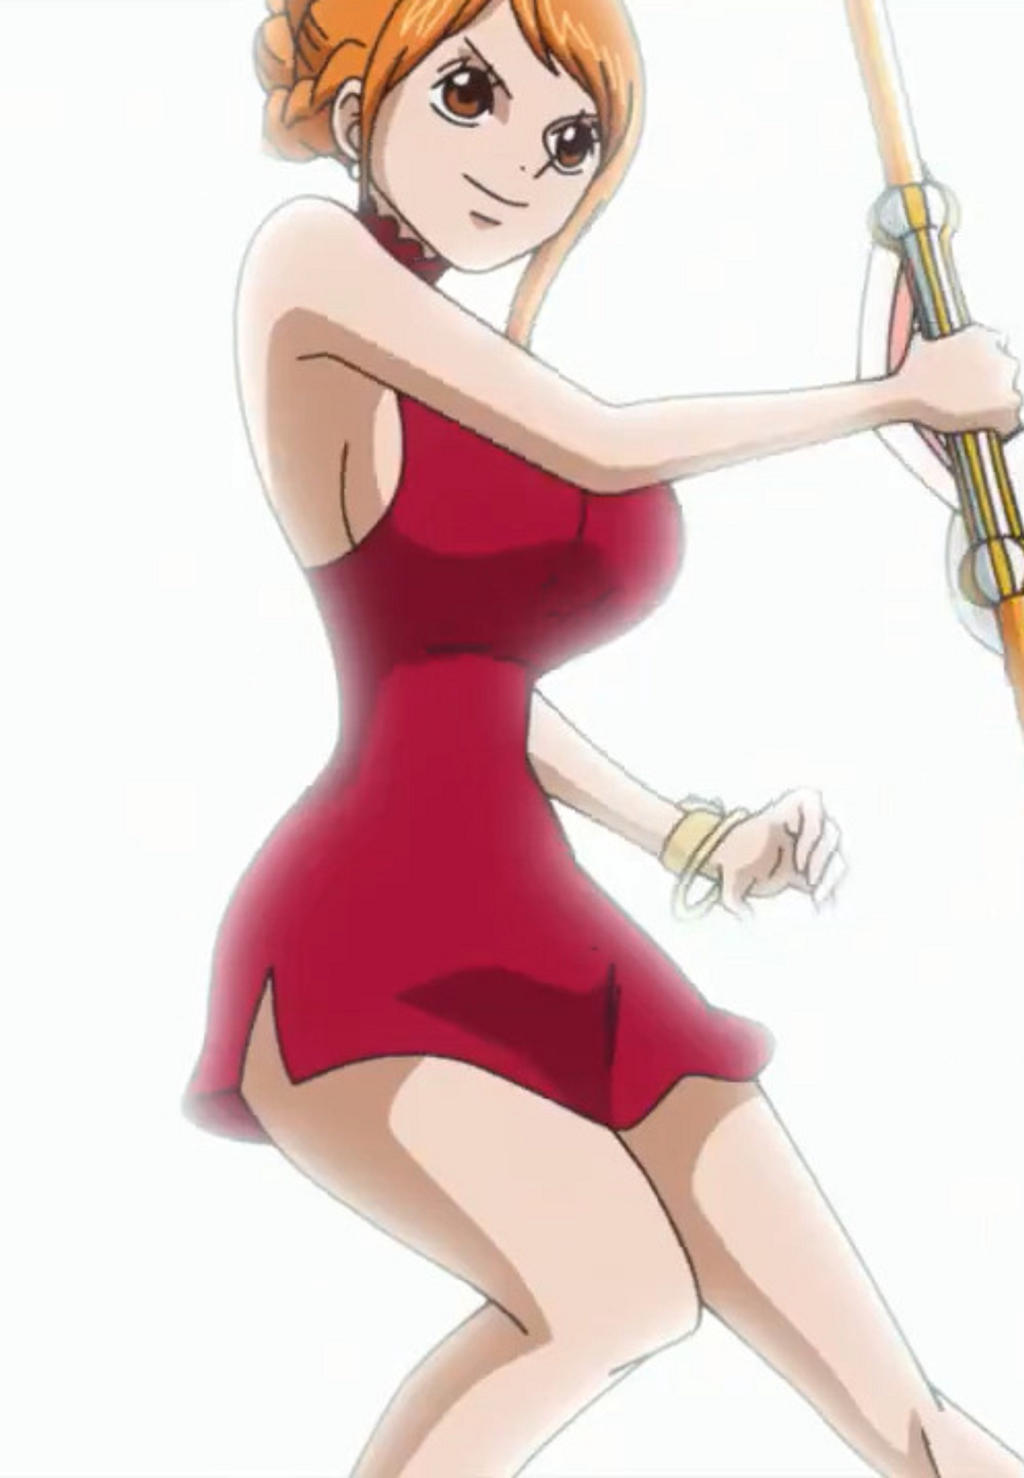 Nami 6 One Piece Episode 845 By Rosesaiyan On Deviantart